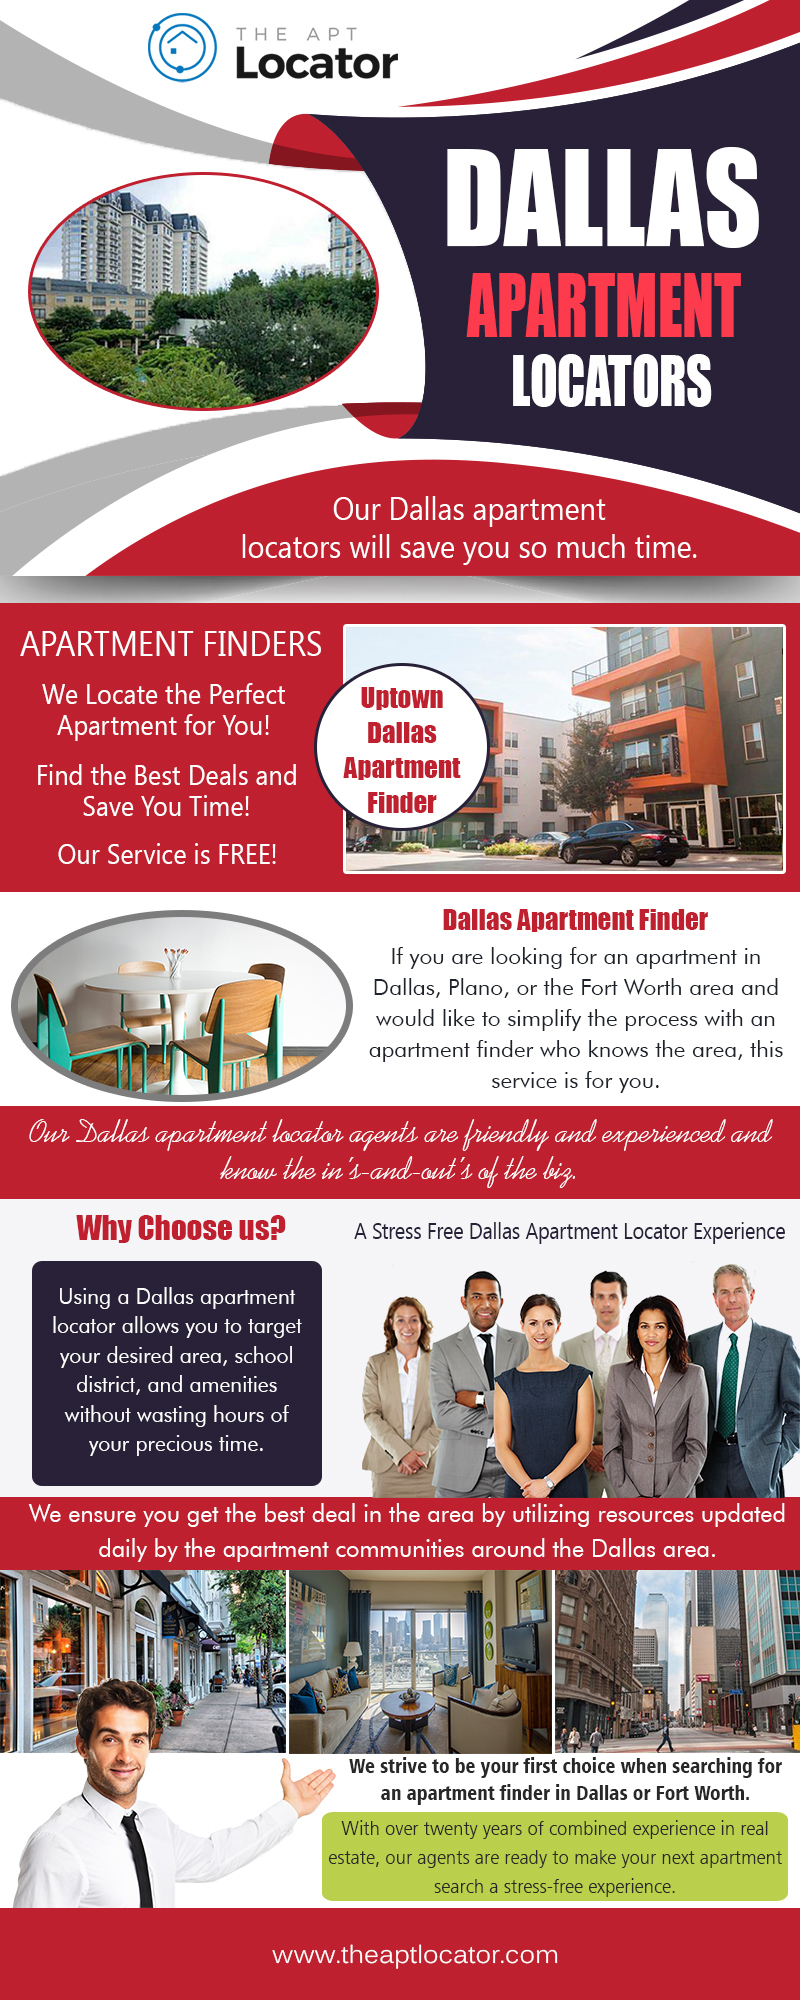 Dallas Apartment Locator | 972 885 0399 | theaptlocator.com